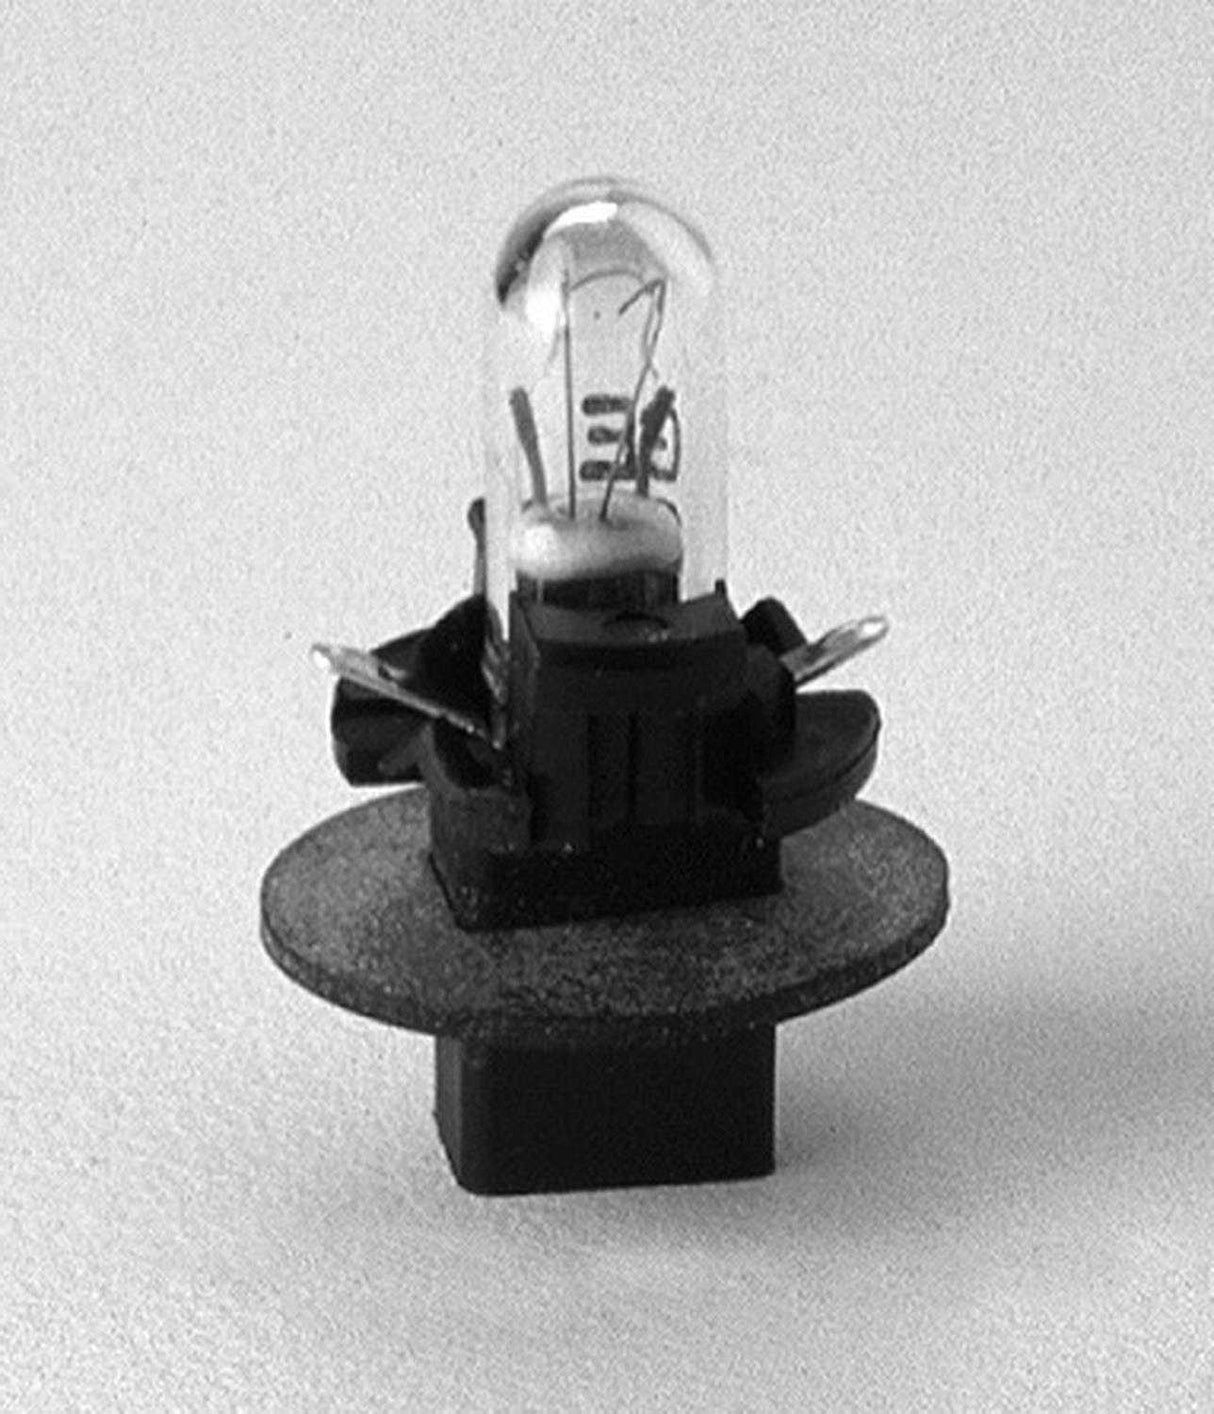 3219 Instrument Panel Light Bulb - LED